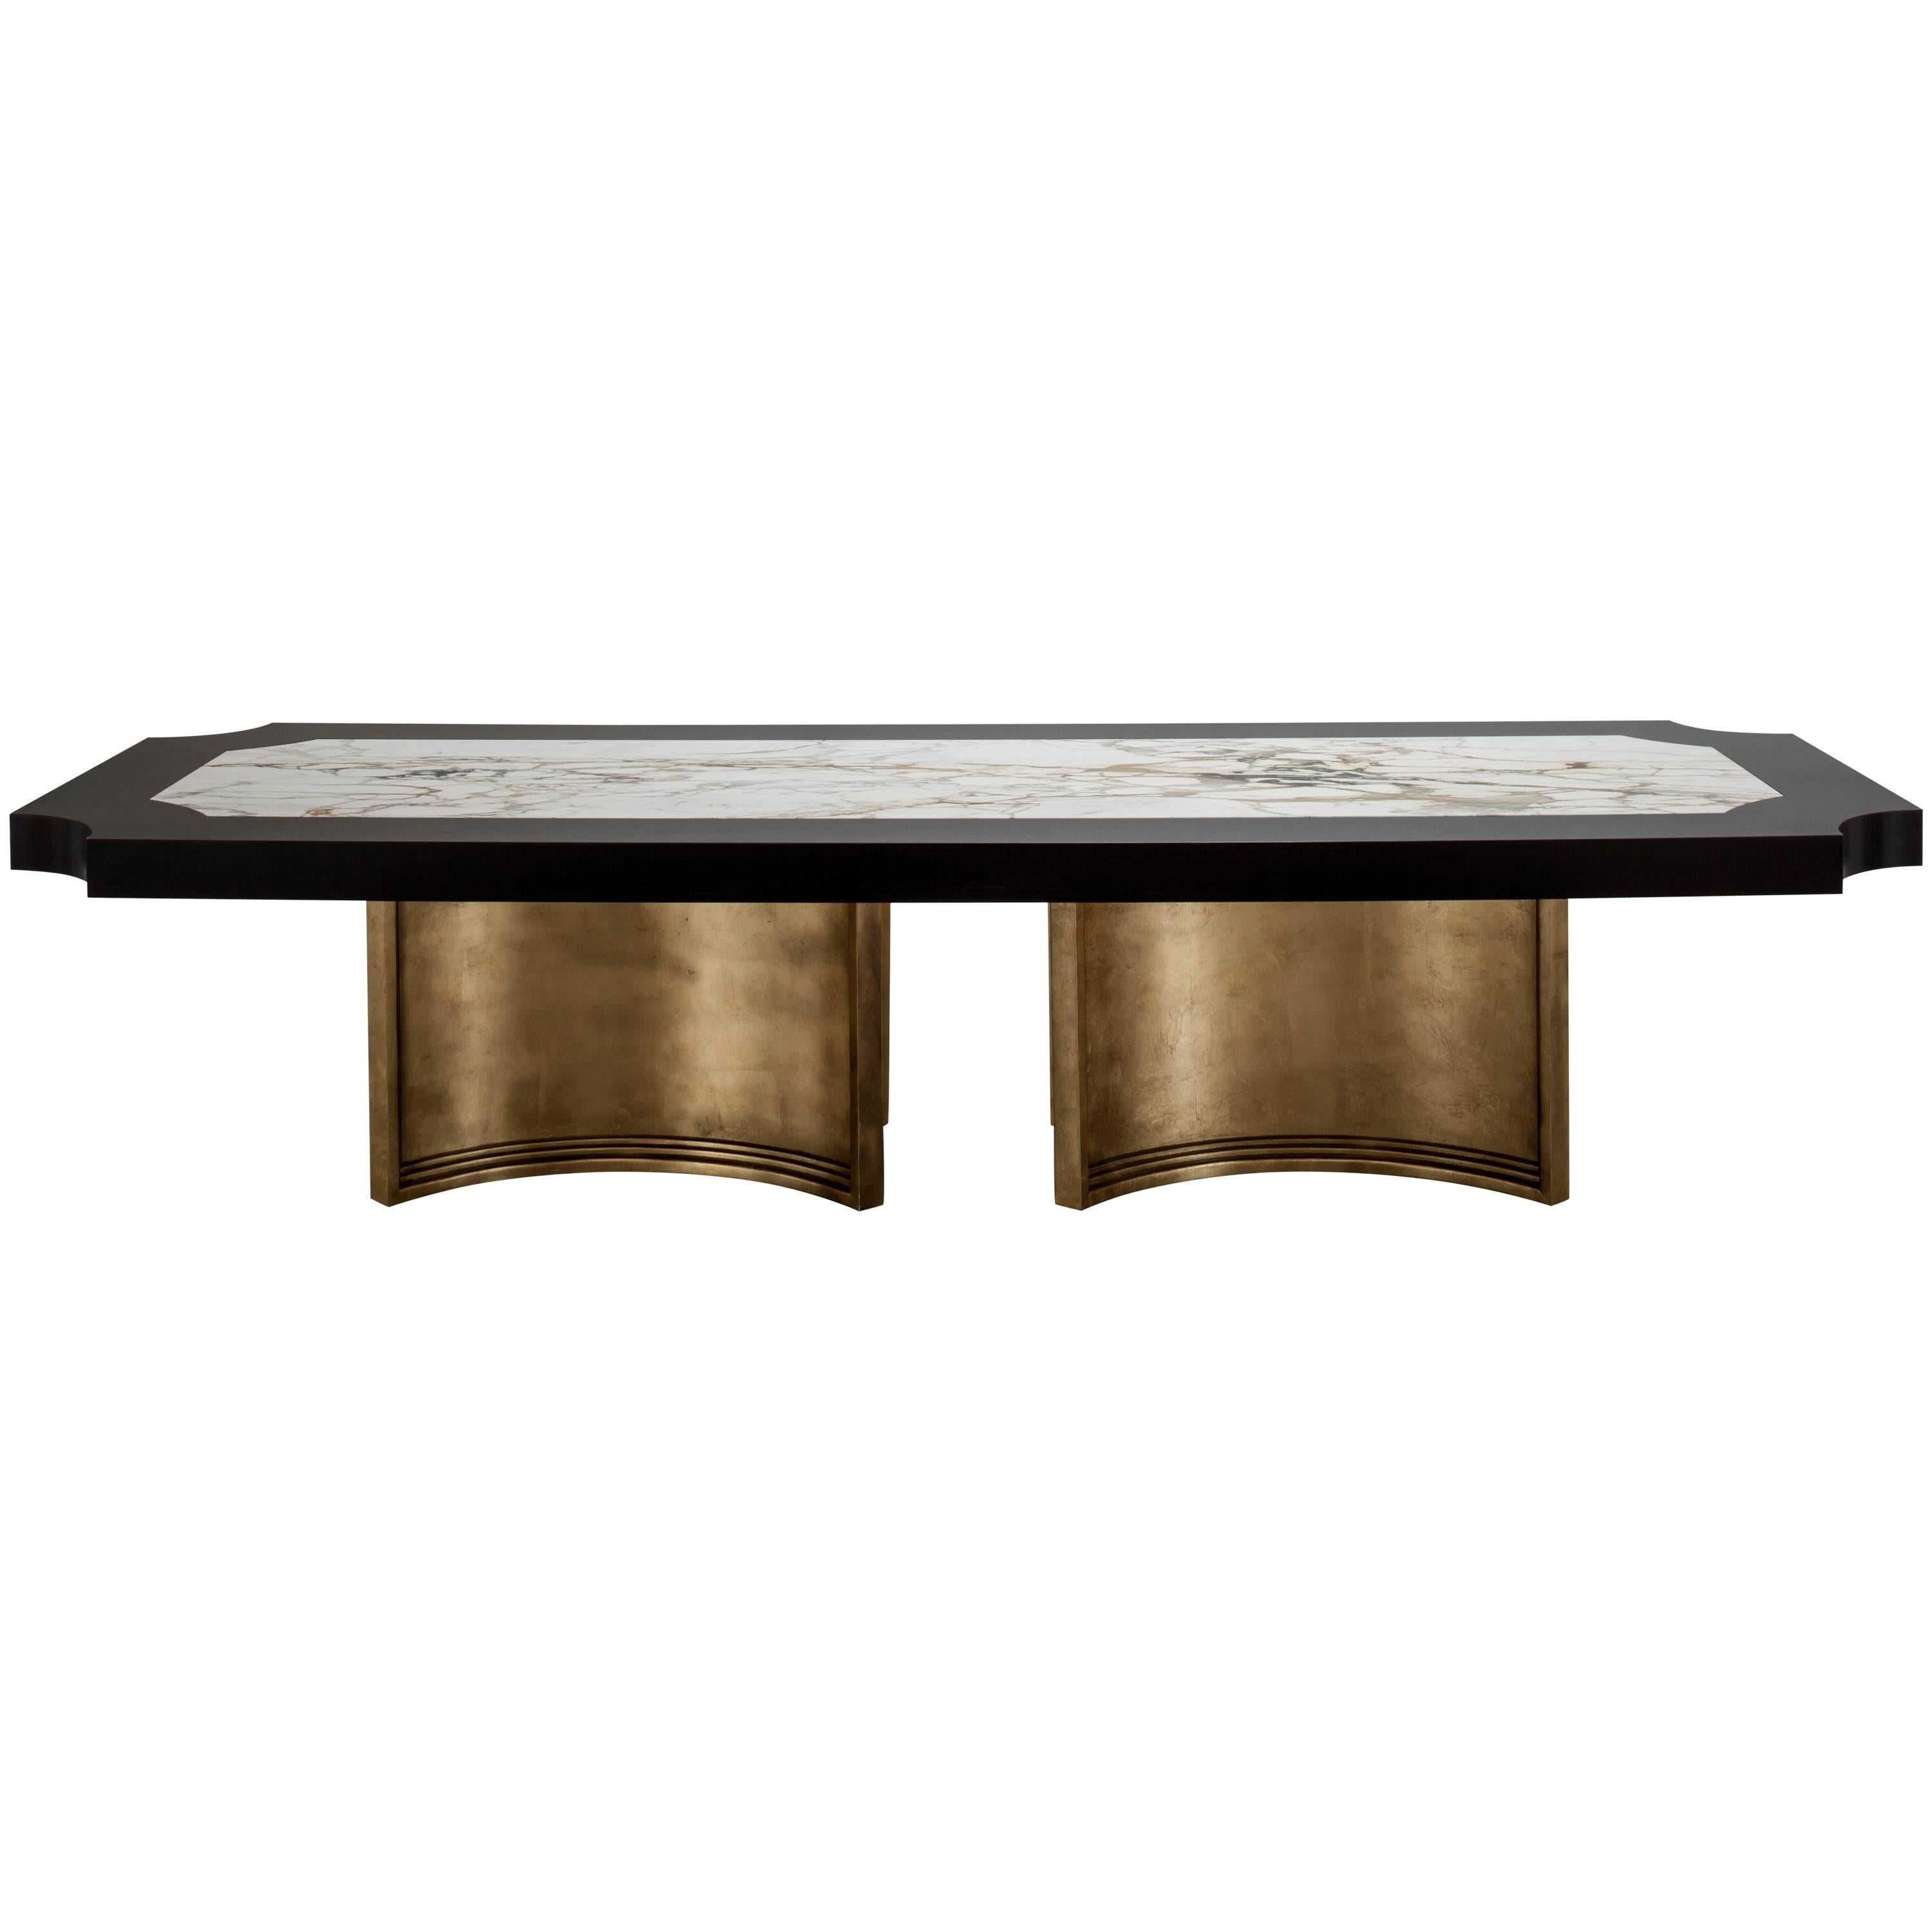 TABLE À MANGER BRUSSELS - Table moderne en chêne ébène, marbre de Carrare et cuir doré